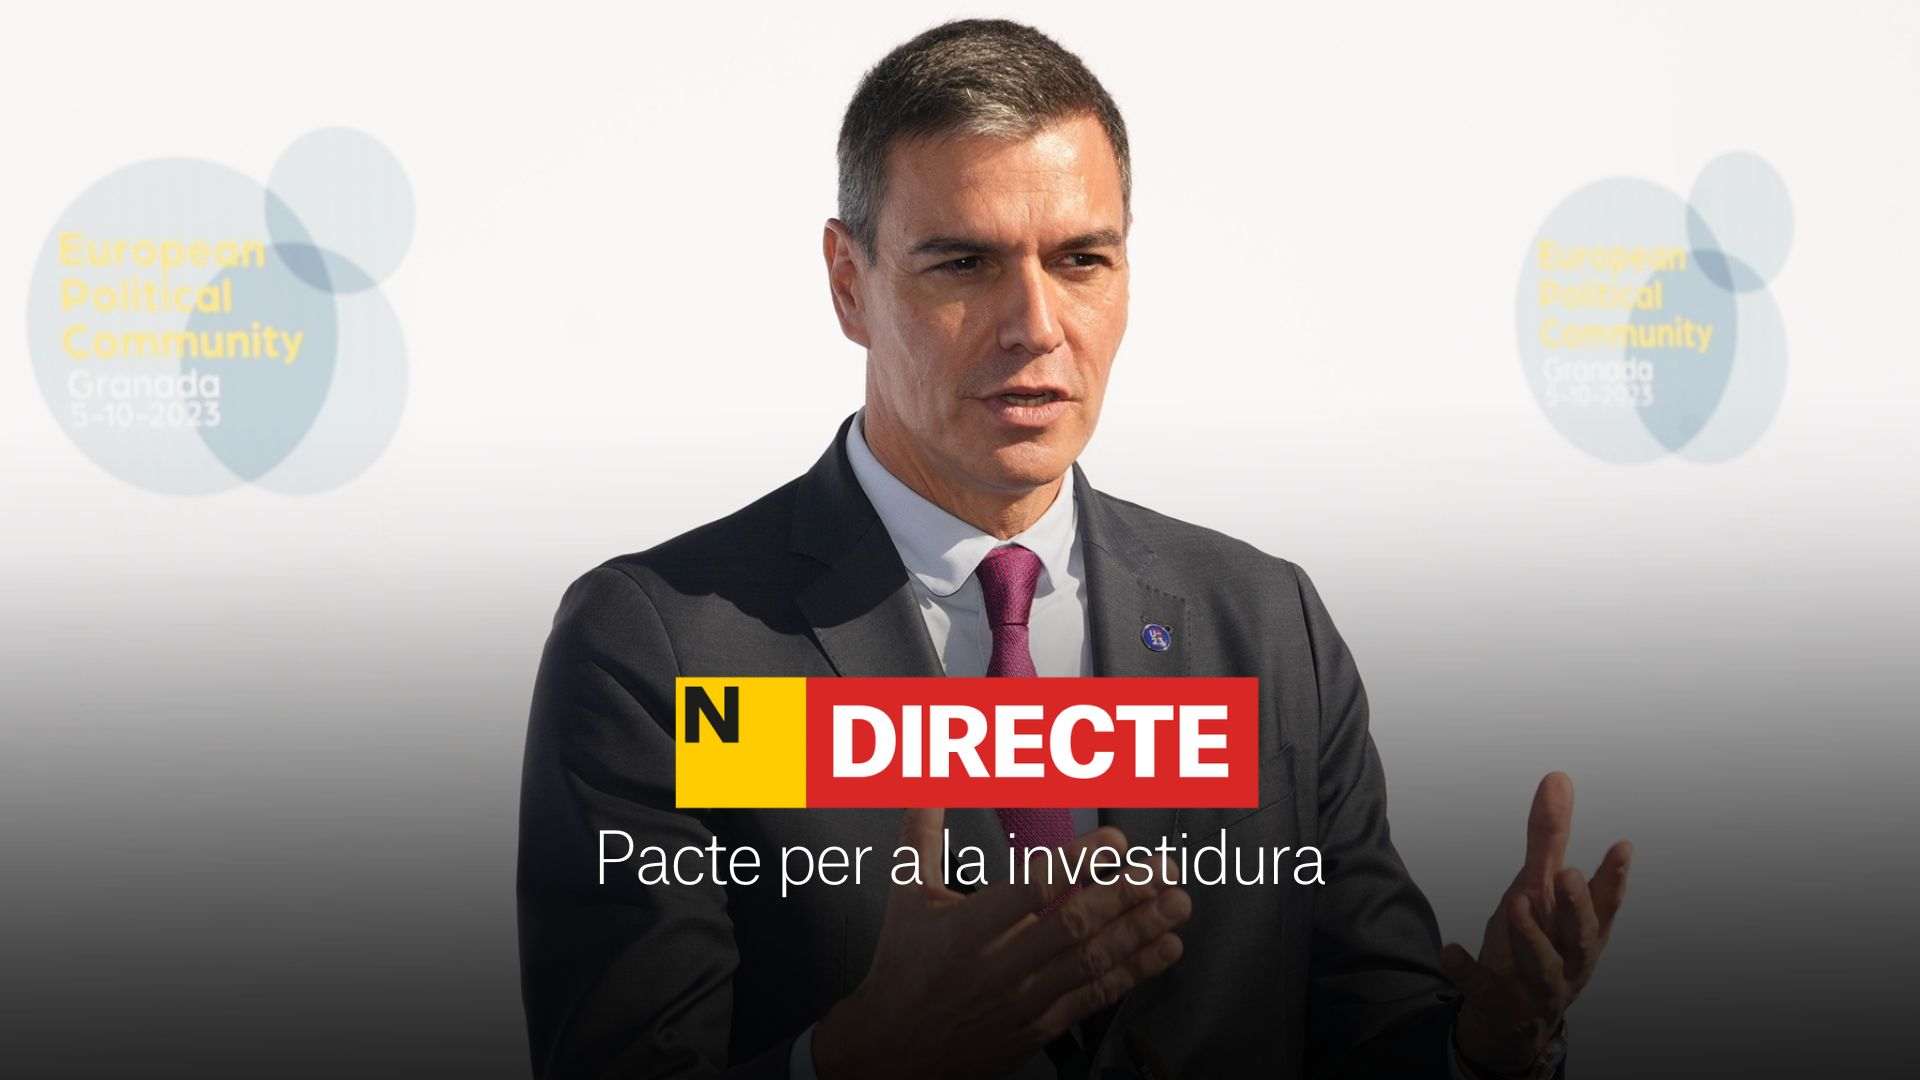 Pactos y acuerdos para la investidura de Pedro Sánchez, DIRECTO | Últimas noticias del 11 de noviembre